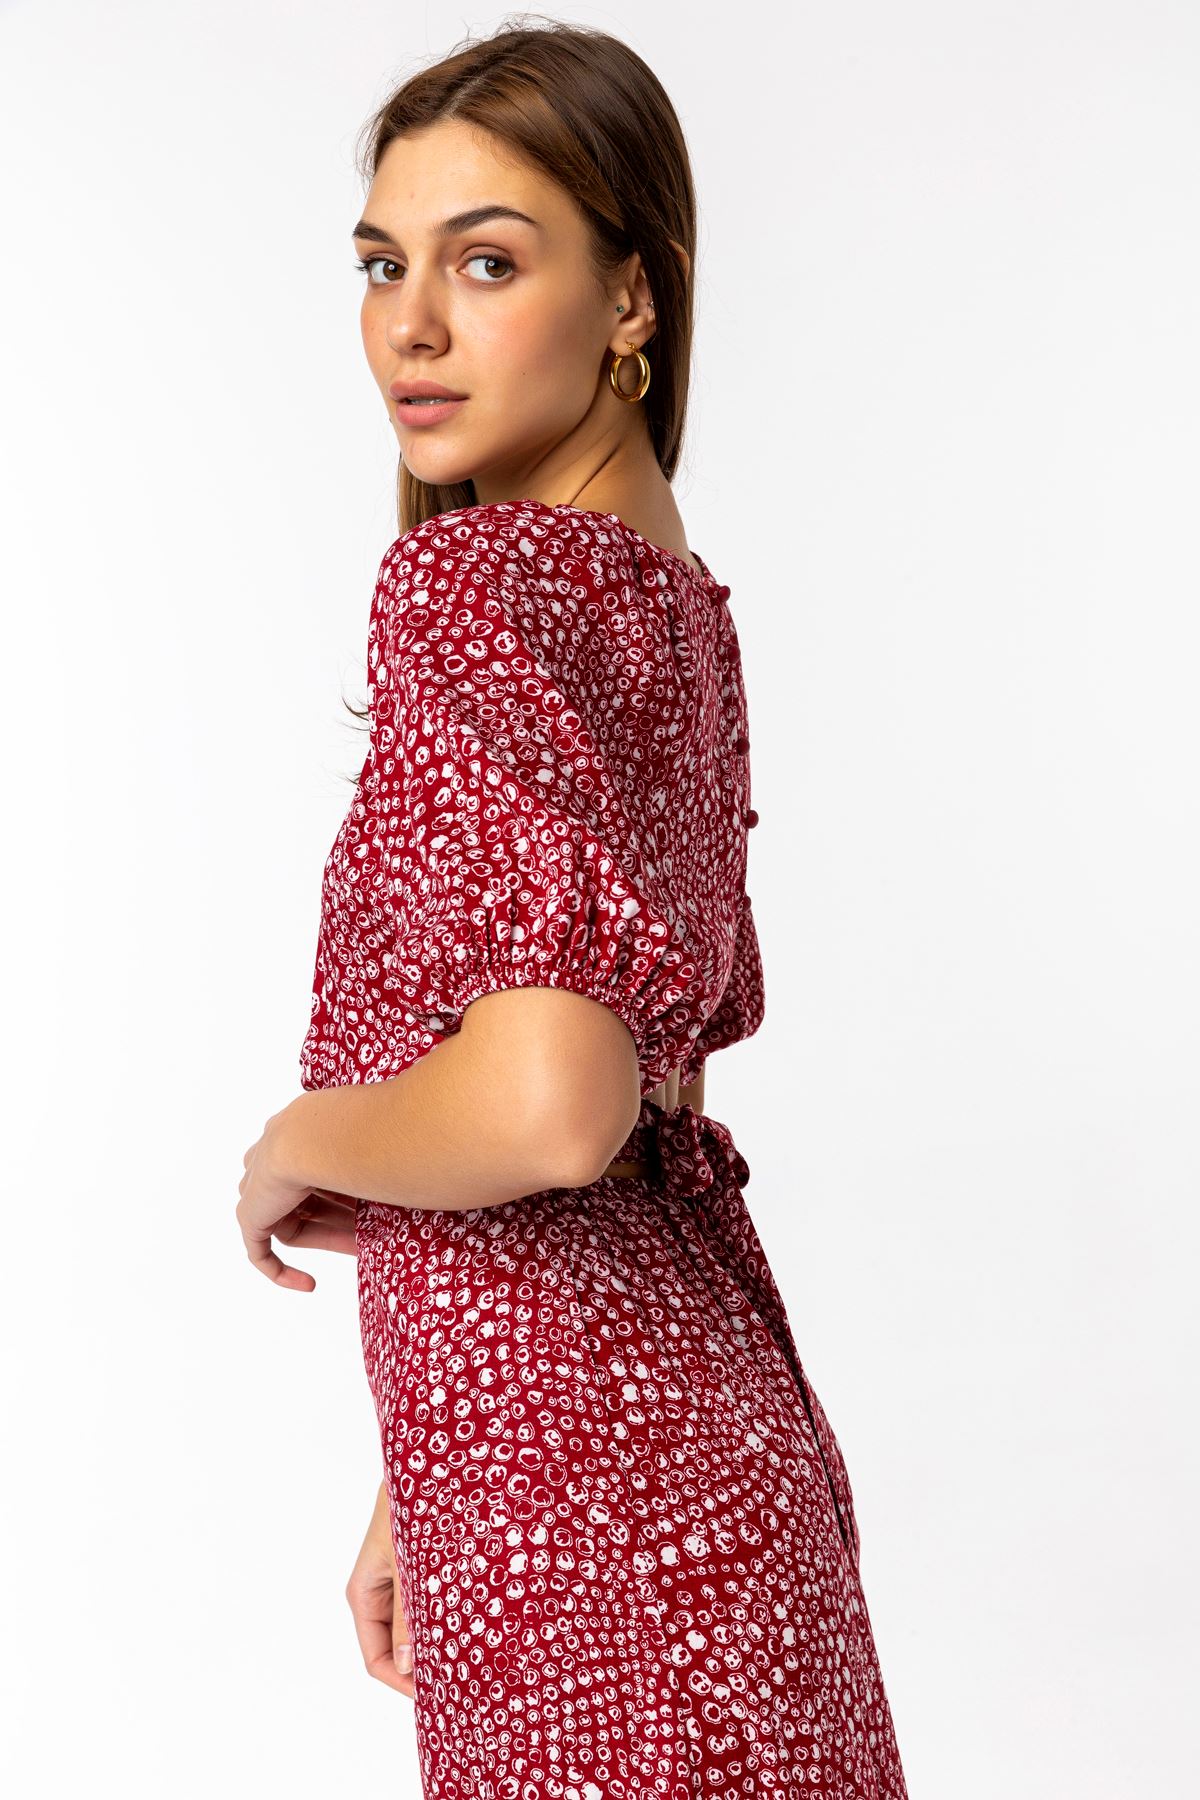 Viscon Fabric Short Sleeve Plush Collar Midi Women Dress - Burgundy